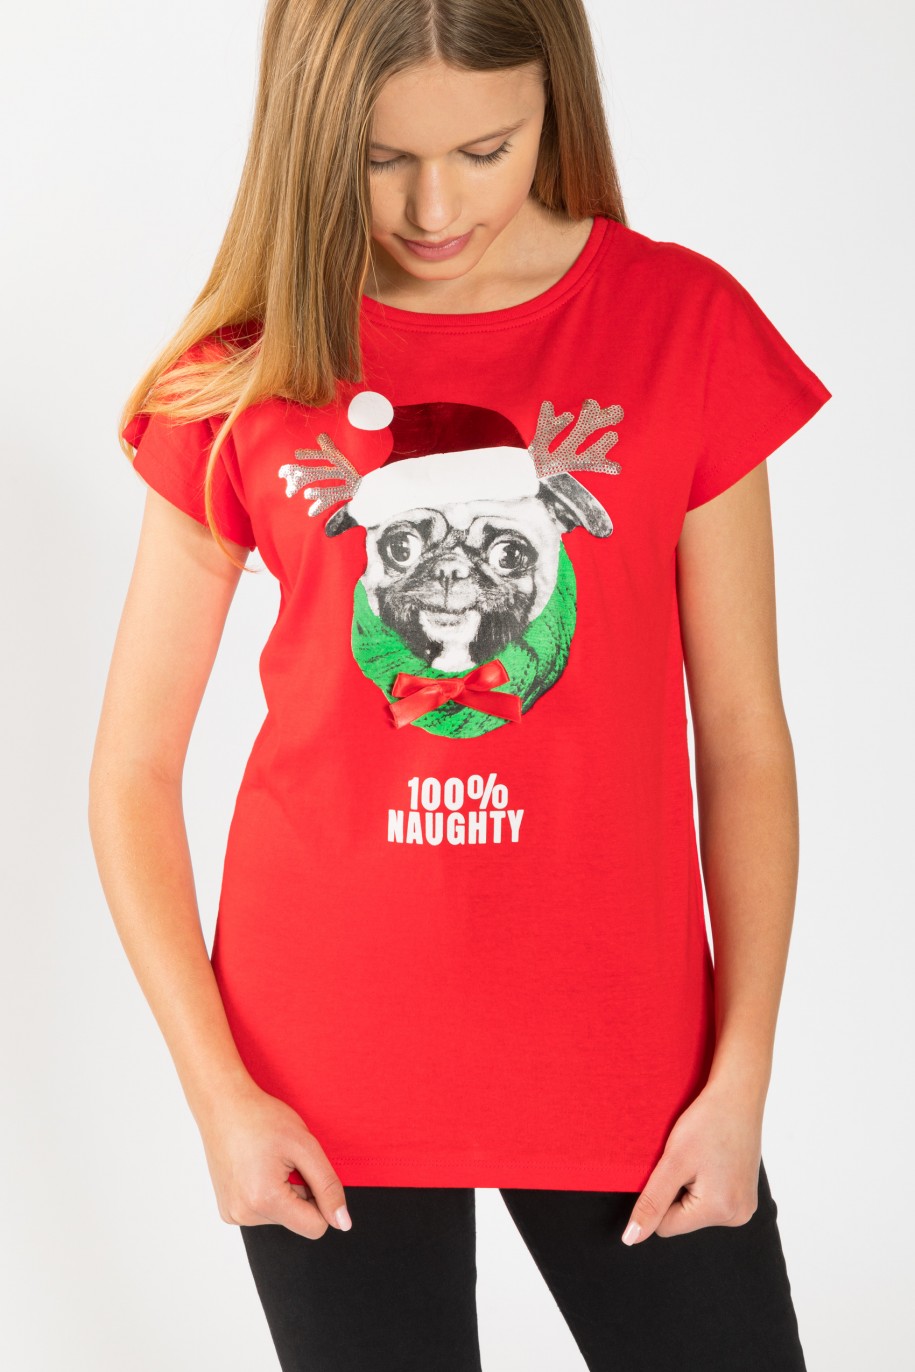 Świąteczny T-shirt dla dziewczyny 100% NAUGHTY - 44848